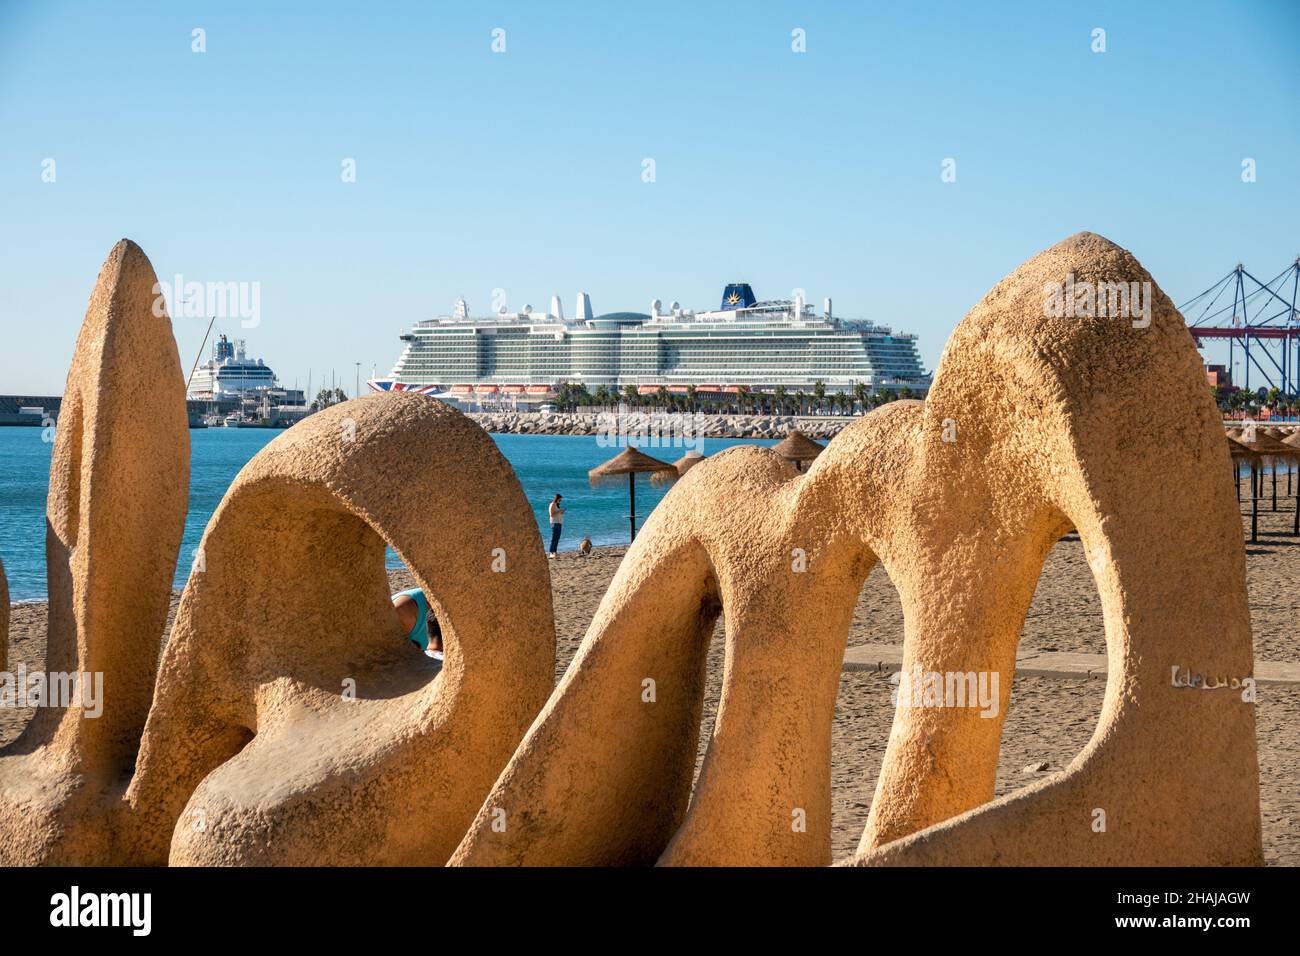 P & O cruise ship, Iona. Stock Photo